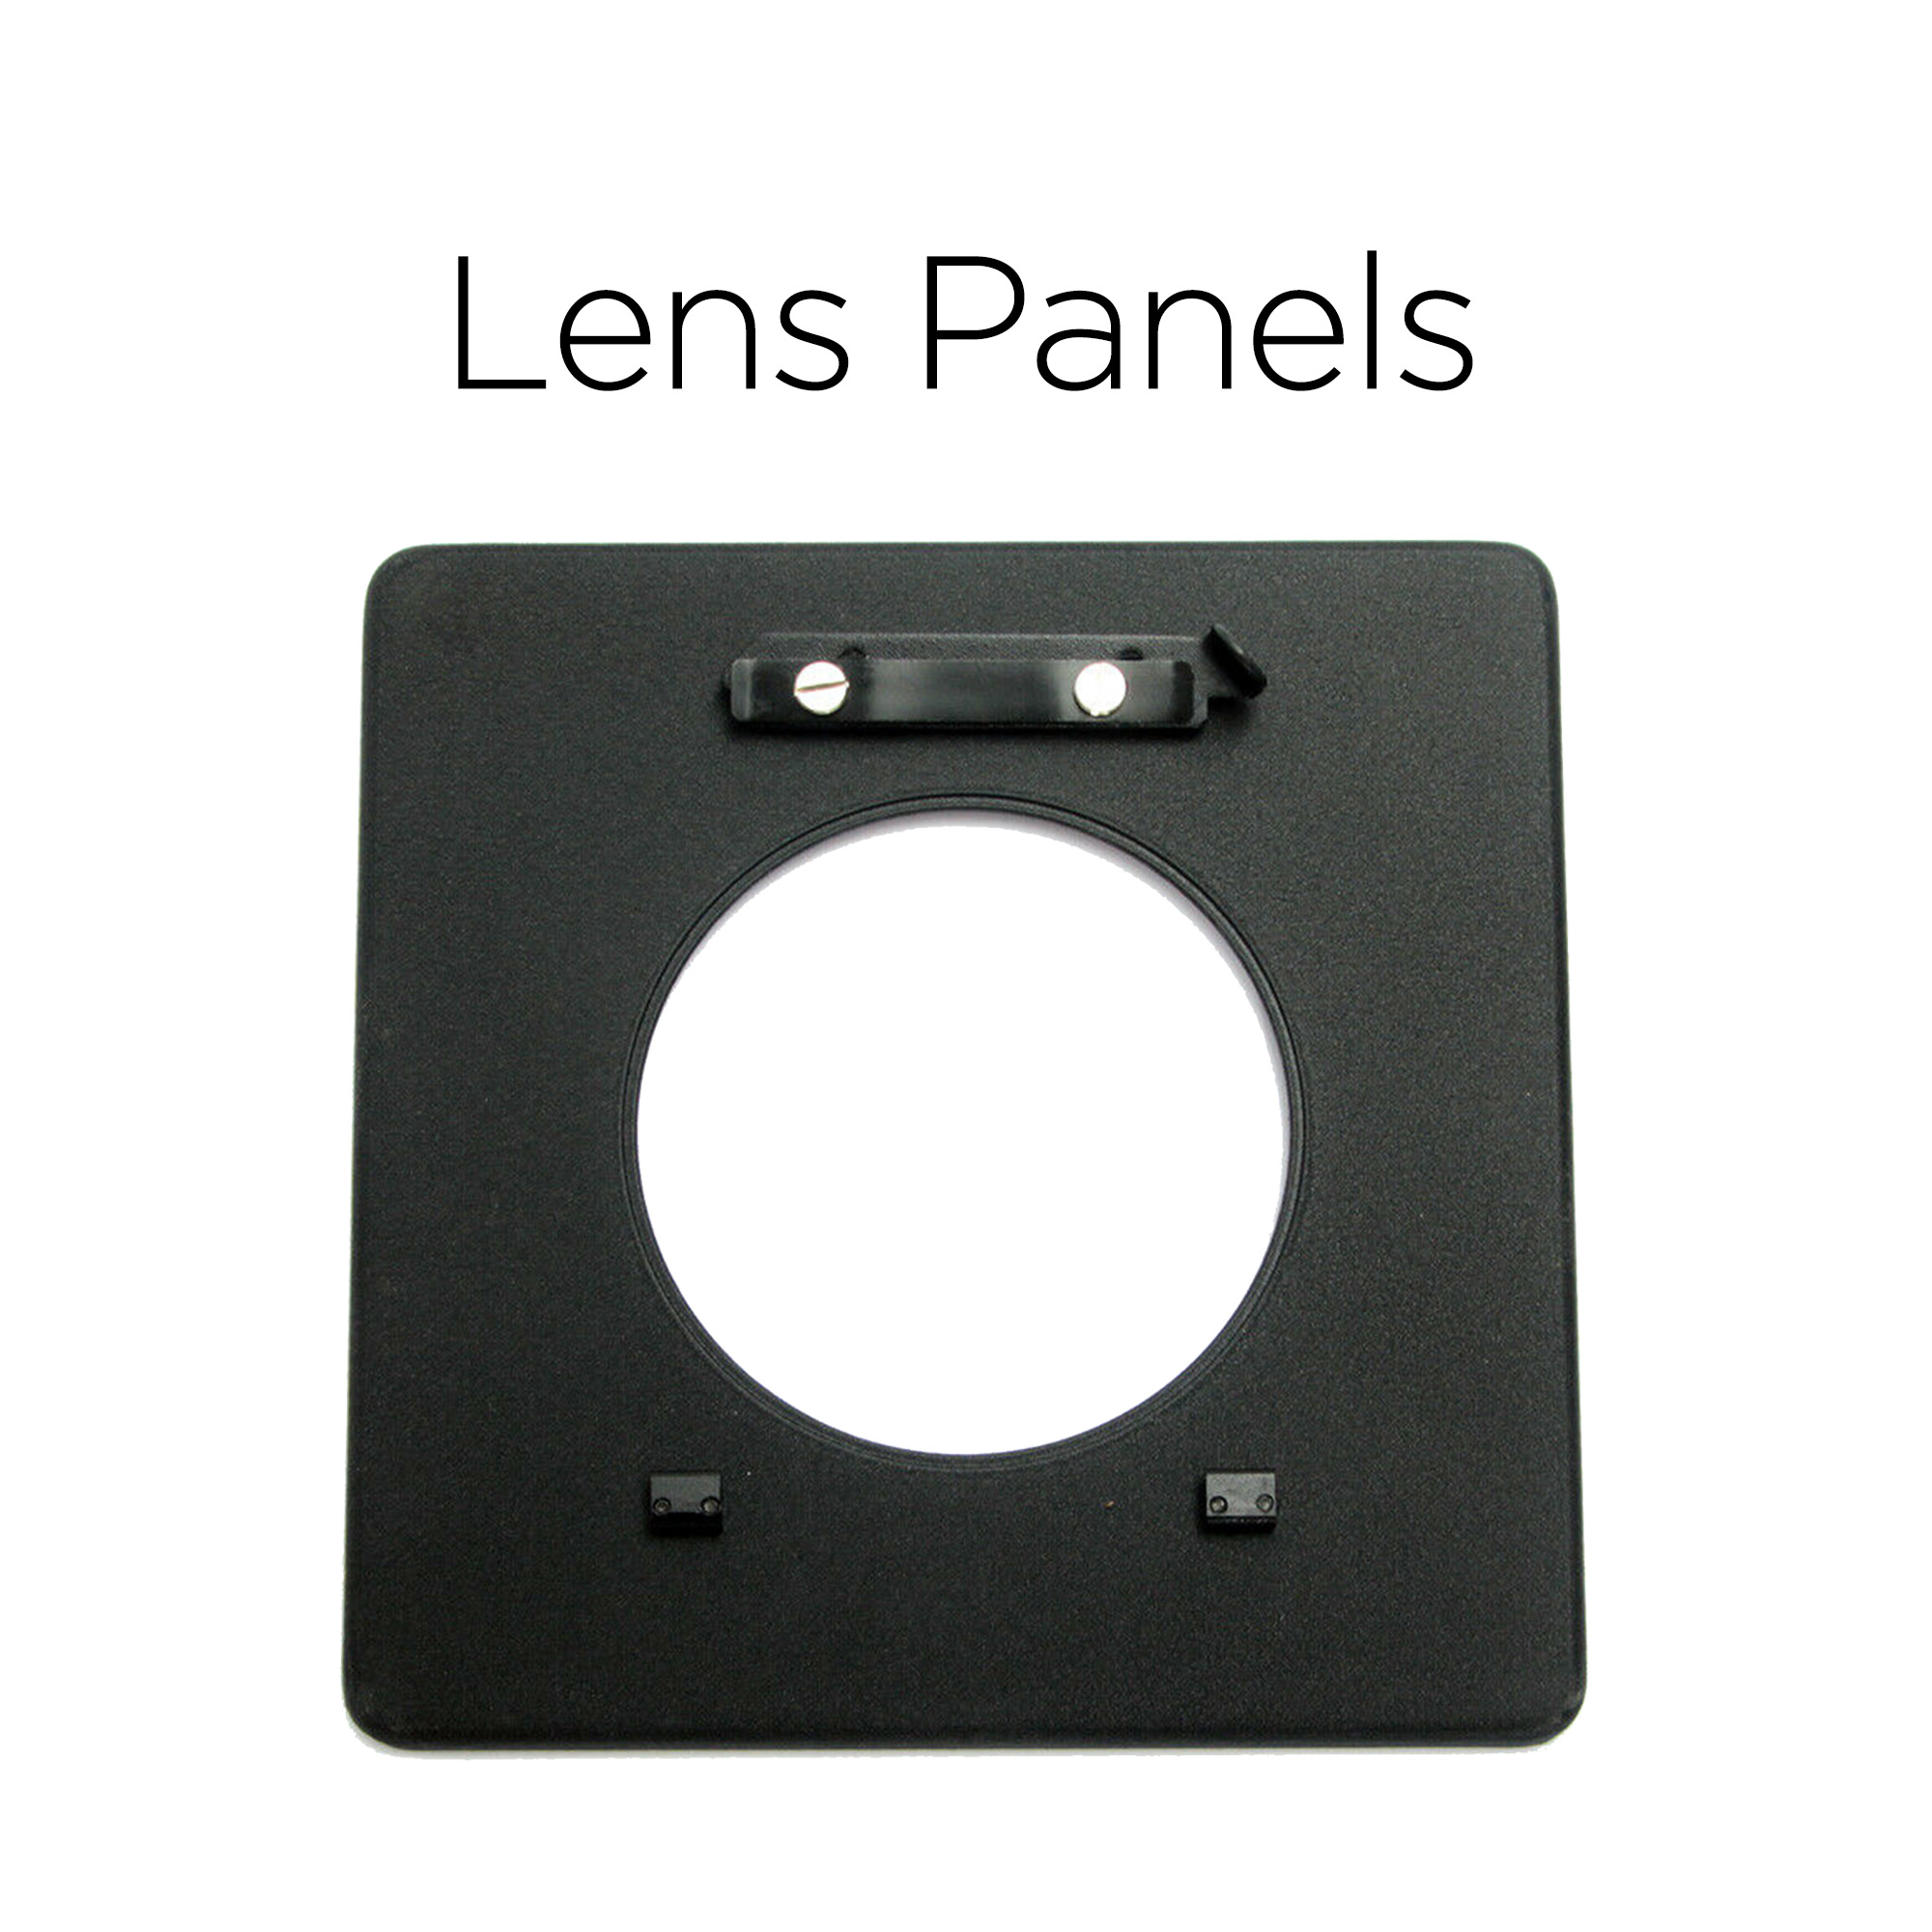 Lens Panels.jpg